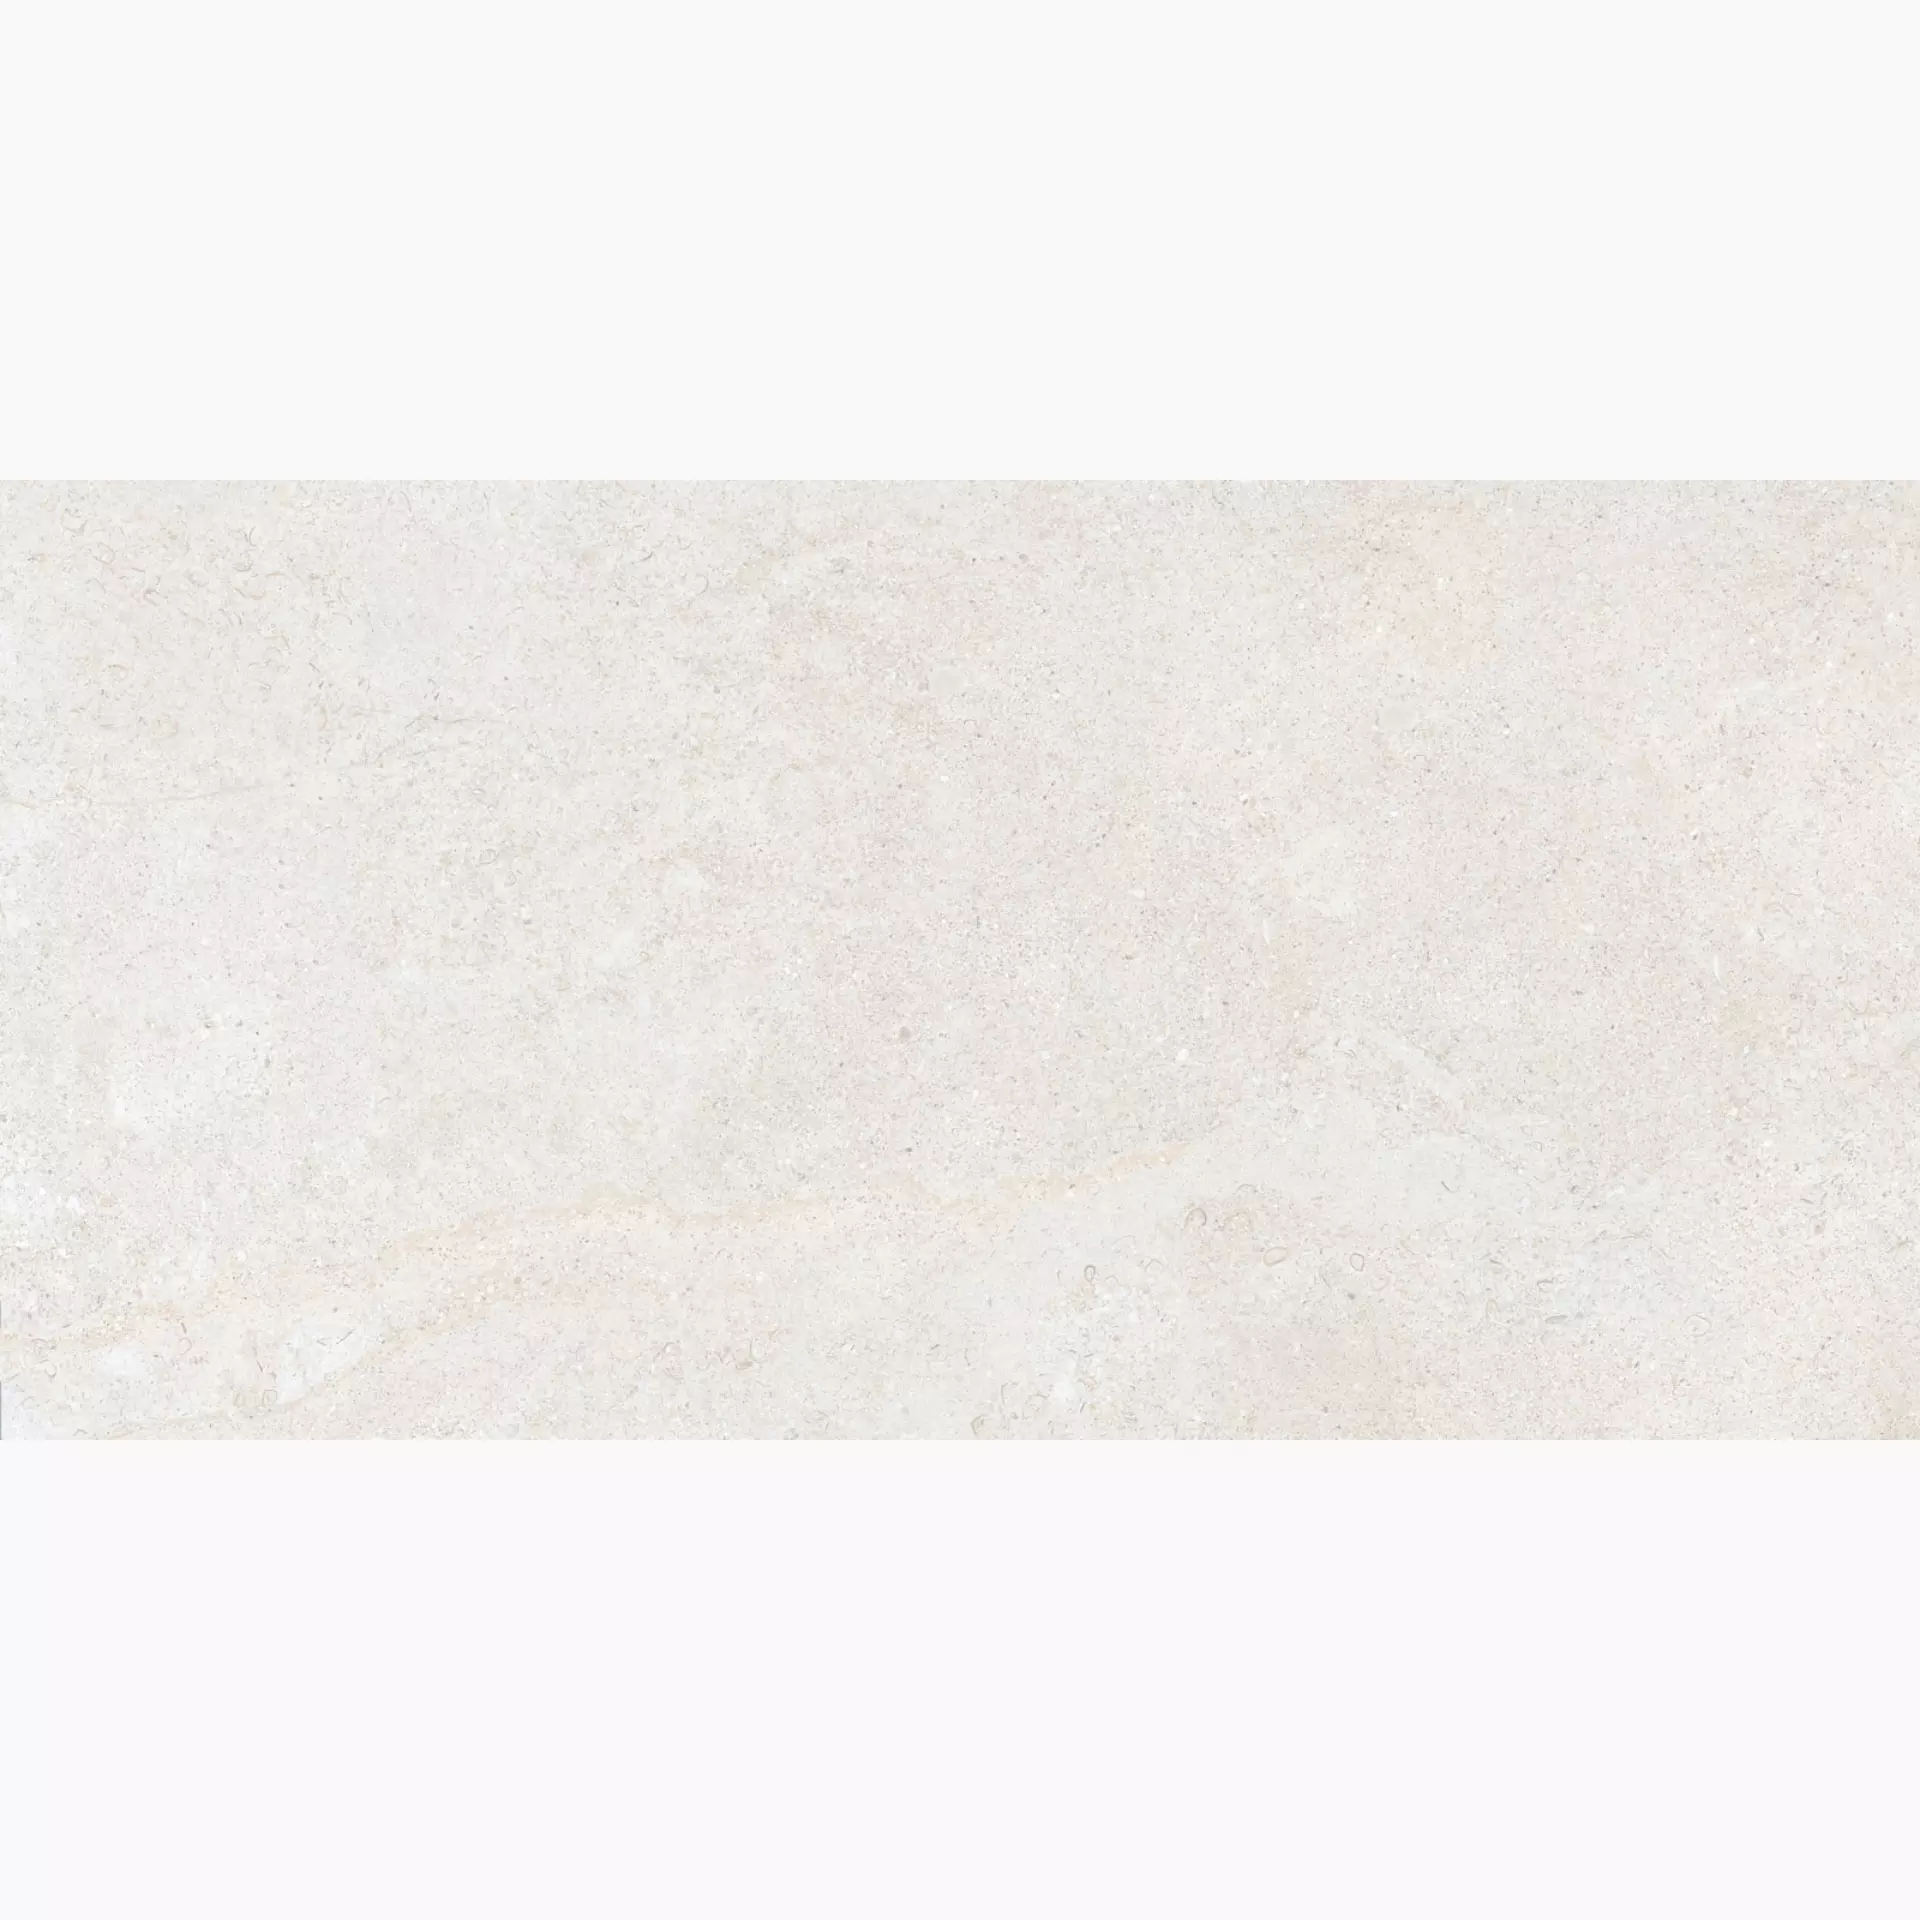 Keope Brystone White Naturale – Matt 44594435 60x120cm rectified 9mm